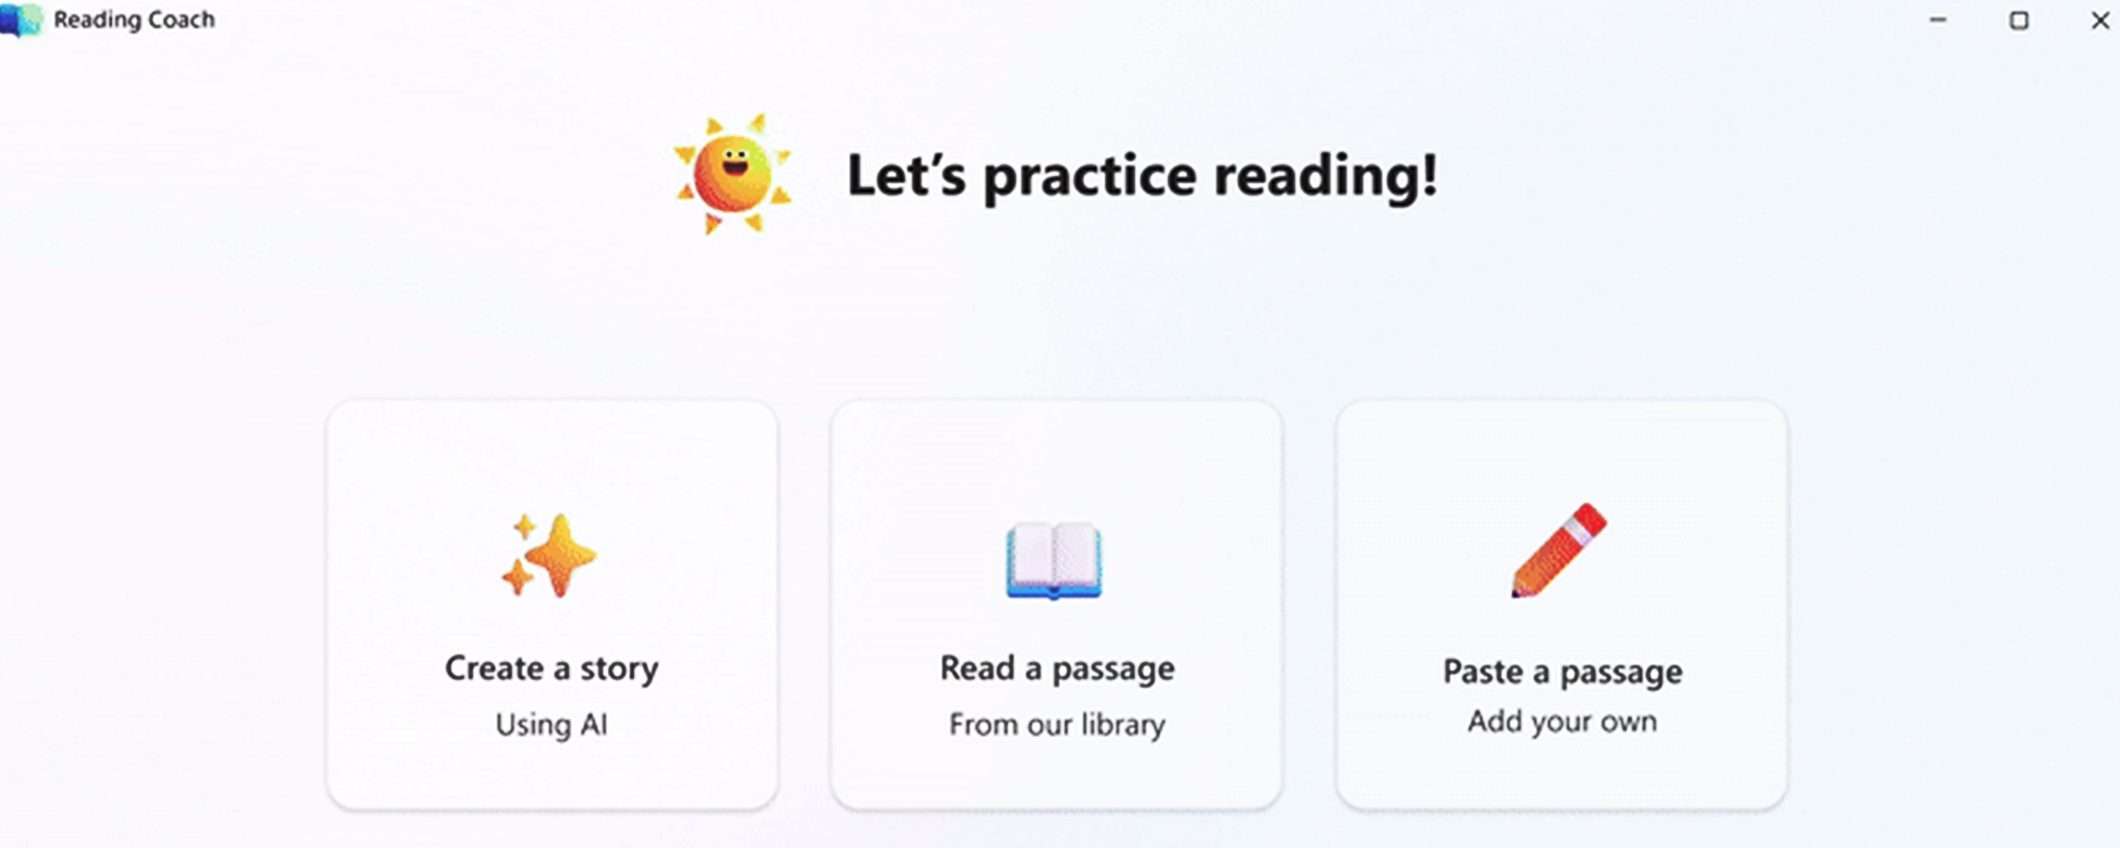 Disponibile gratis Reading Coach, il tutor di lettura AI di Microsoft